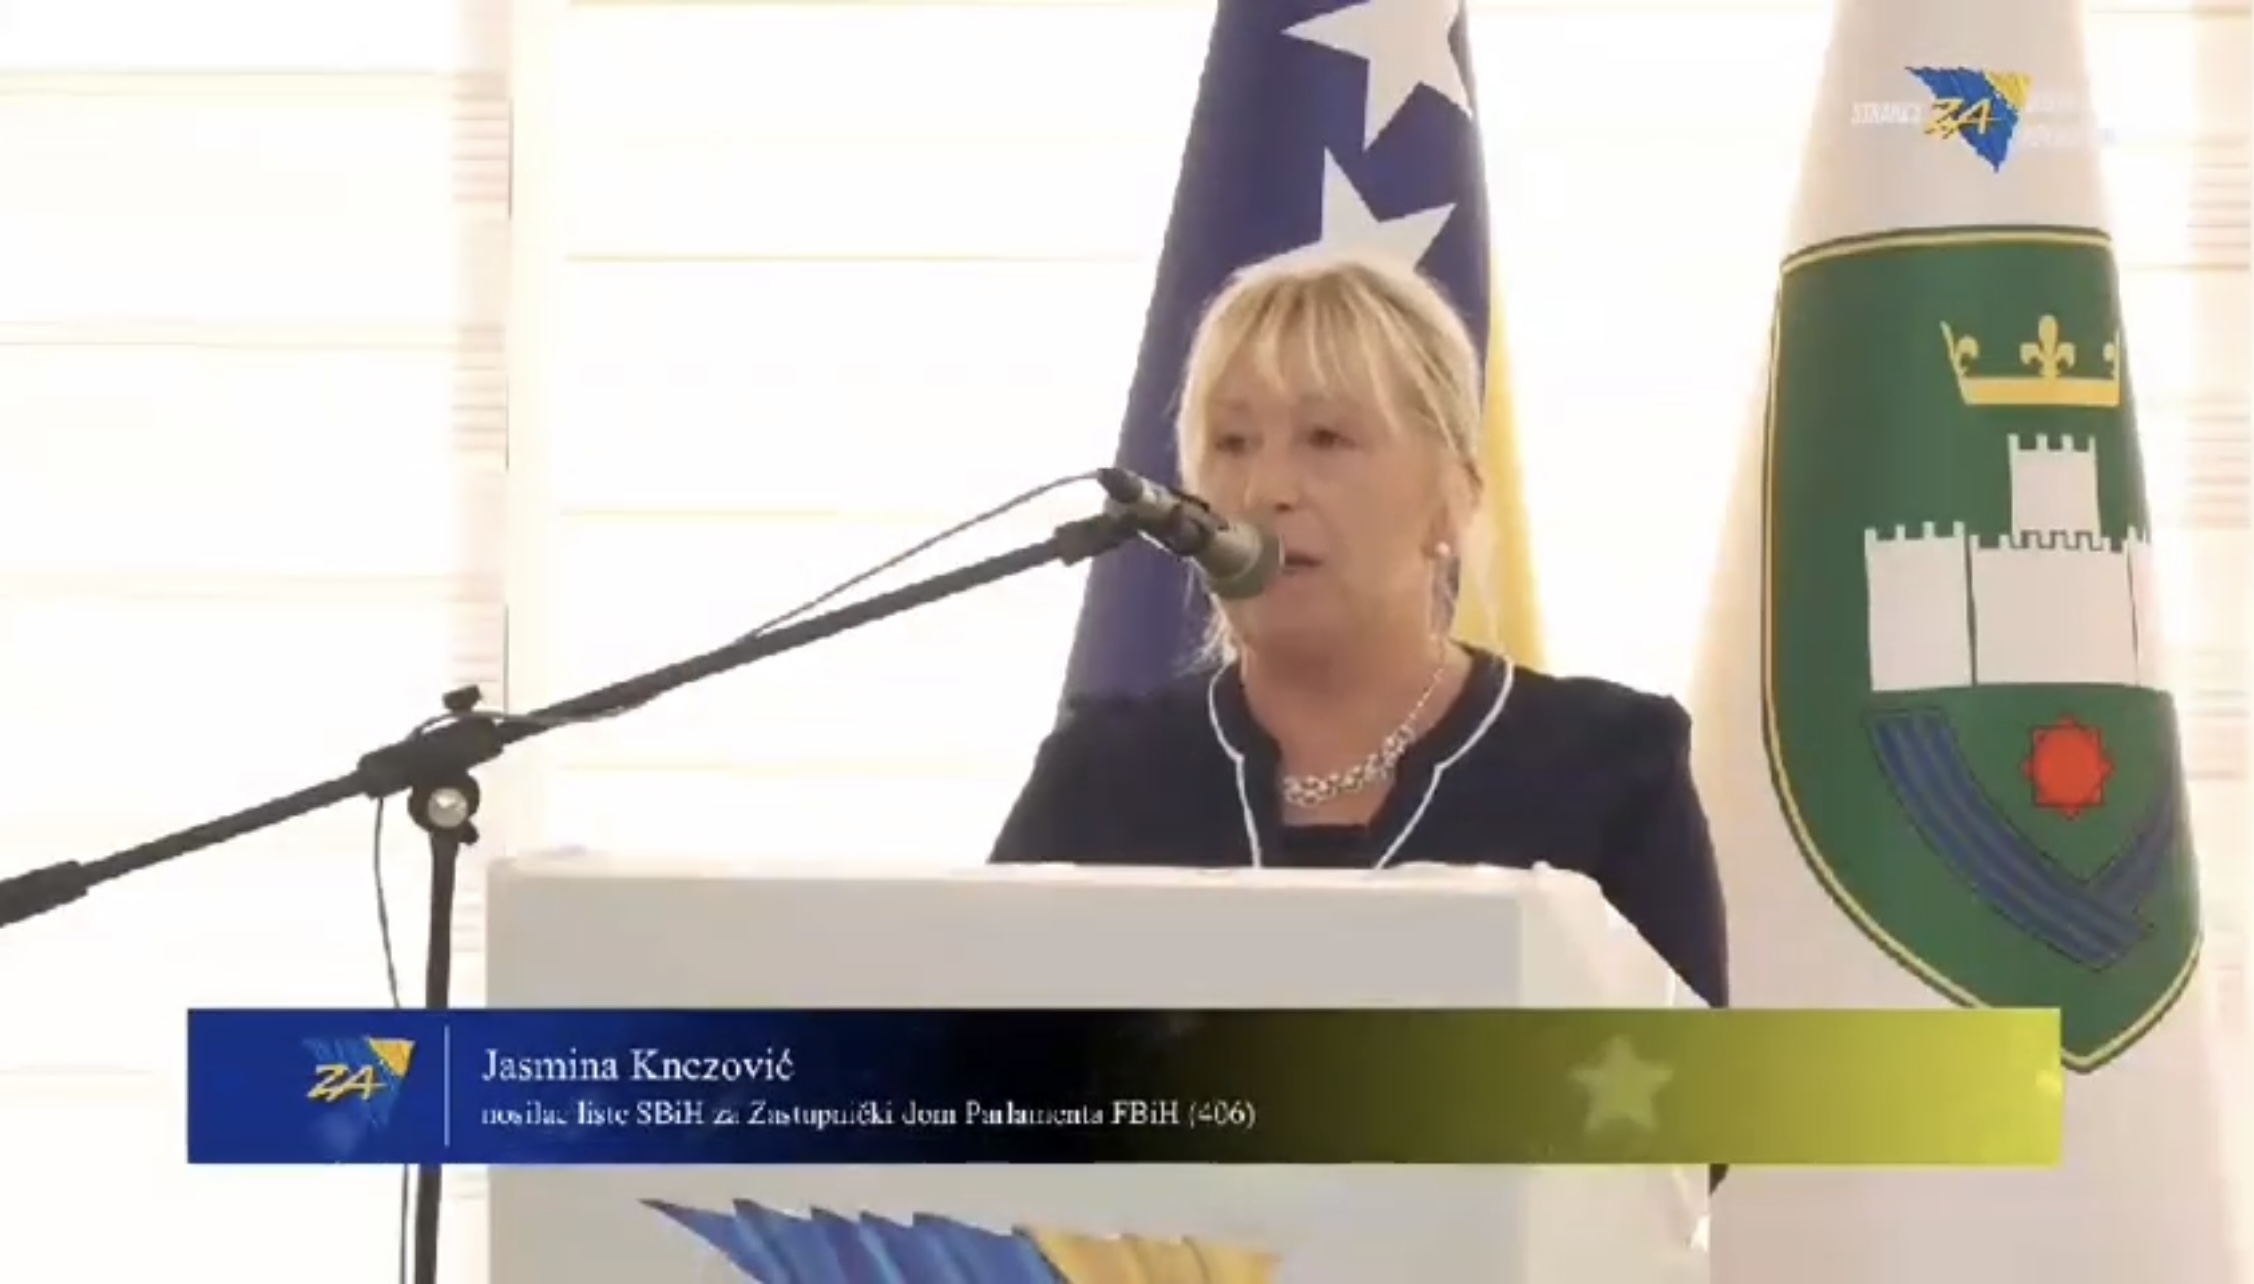 VIDEO / Jasmina Knezović: U politički život ulazim zbog općih a ne ličnih interesa